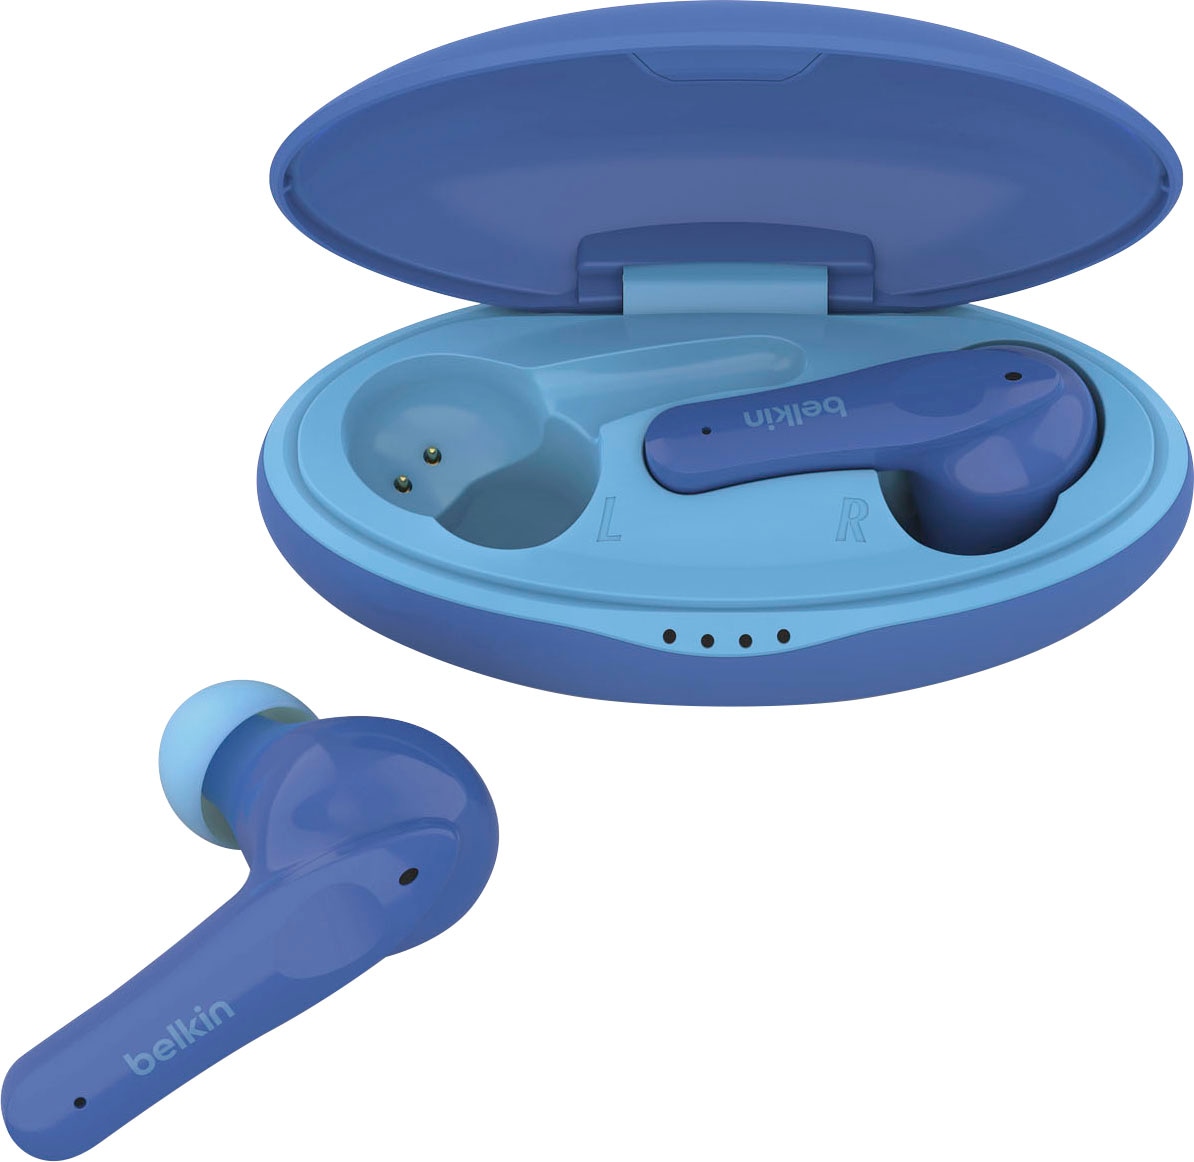 Belkin wireless Kopfhörer »SOUNDFORM NANO - Kinder In-Ear-Kopfhörer«, auf 85 dB begrenzt; am Kopfhörer